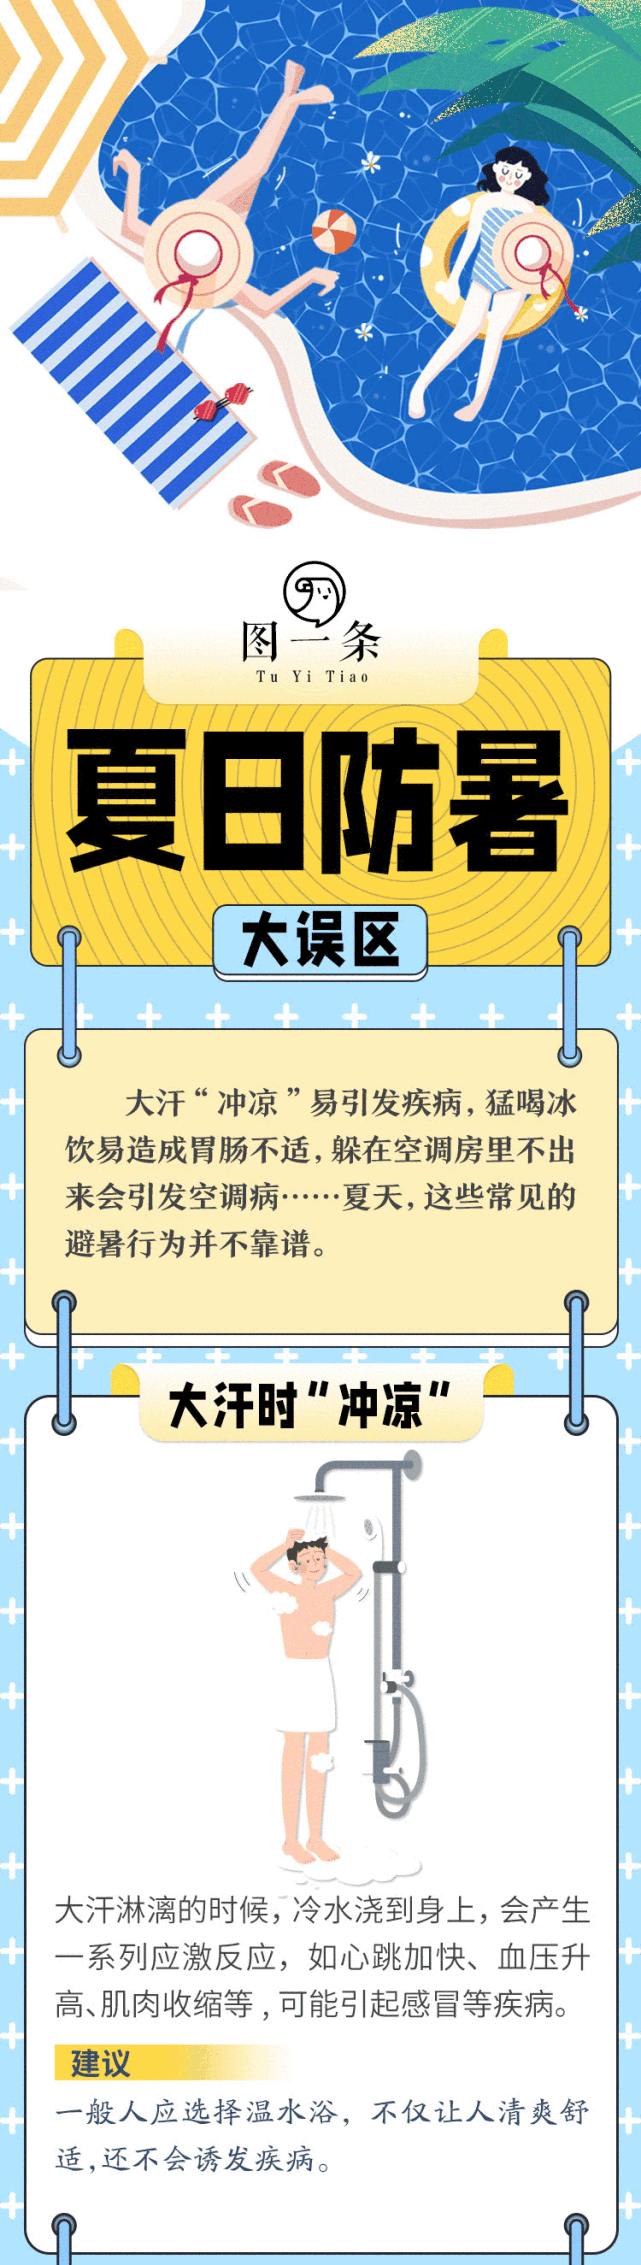 武汉发布2021入夏高温黄色预警:最高气温将接近38℃